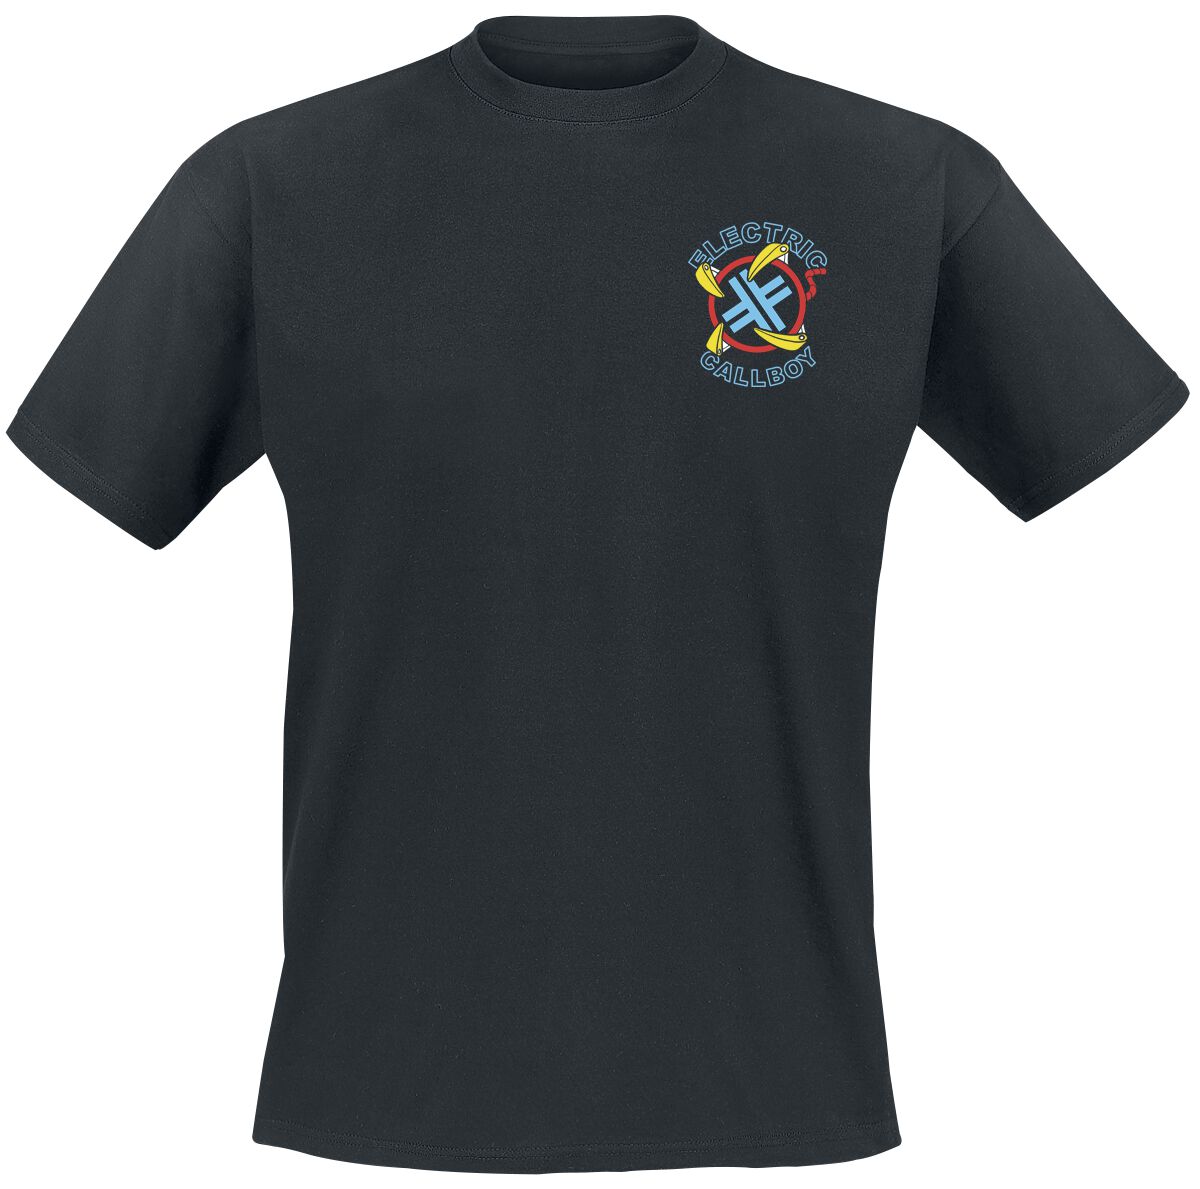 Electric Callboy T-Shirt - Let`s Play - S bis 3XL - für Männer - Größe S - schwarz  - Lizenziertes Merchandise!